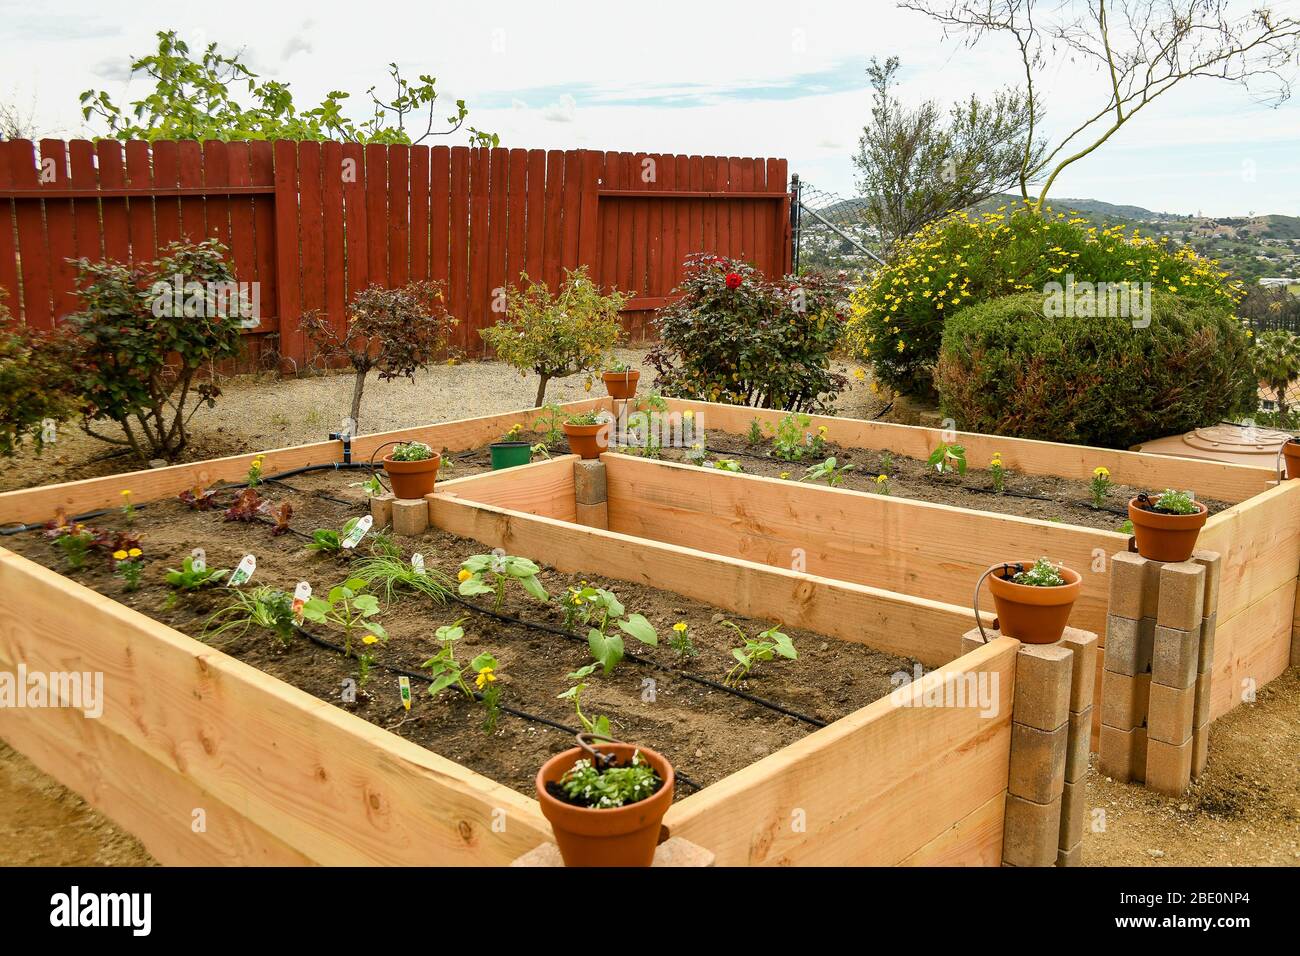 Hochbett Garten alle gebaut, gefüllt, und mit Gemüse und Ringelblumen  gepflanzt Stockfotografie - Alamy